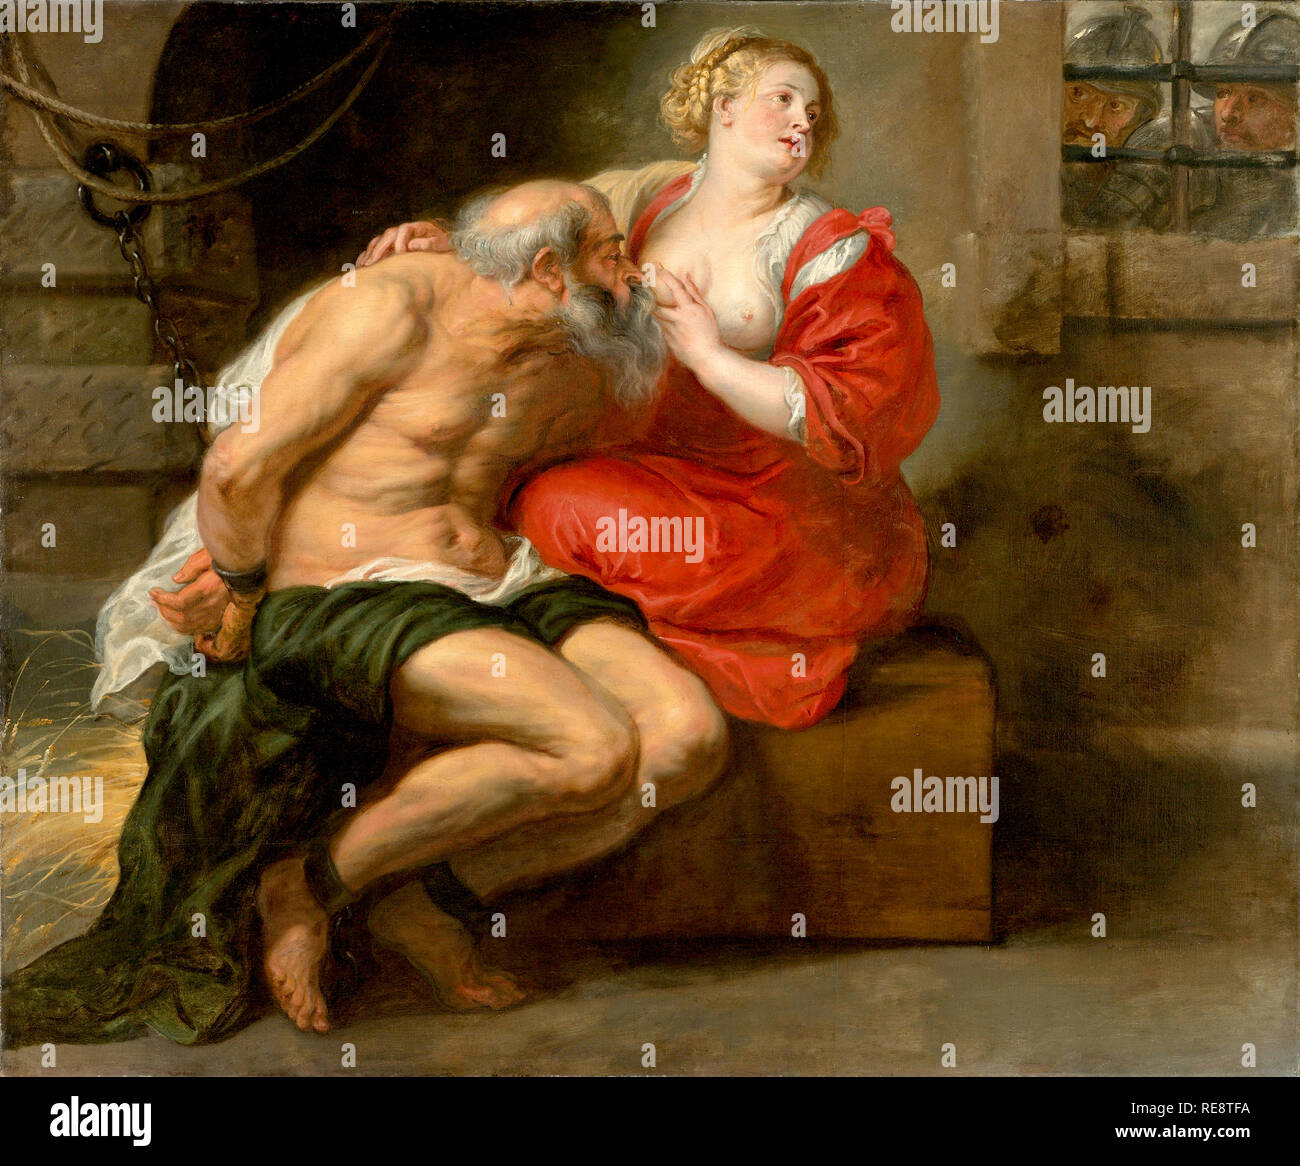 Cimon y pero por Peter Paul Rubens, hija de amamantar a su padre en la cárcel Foto de stock